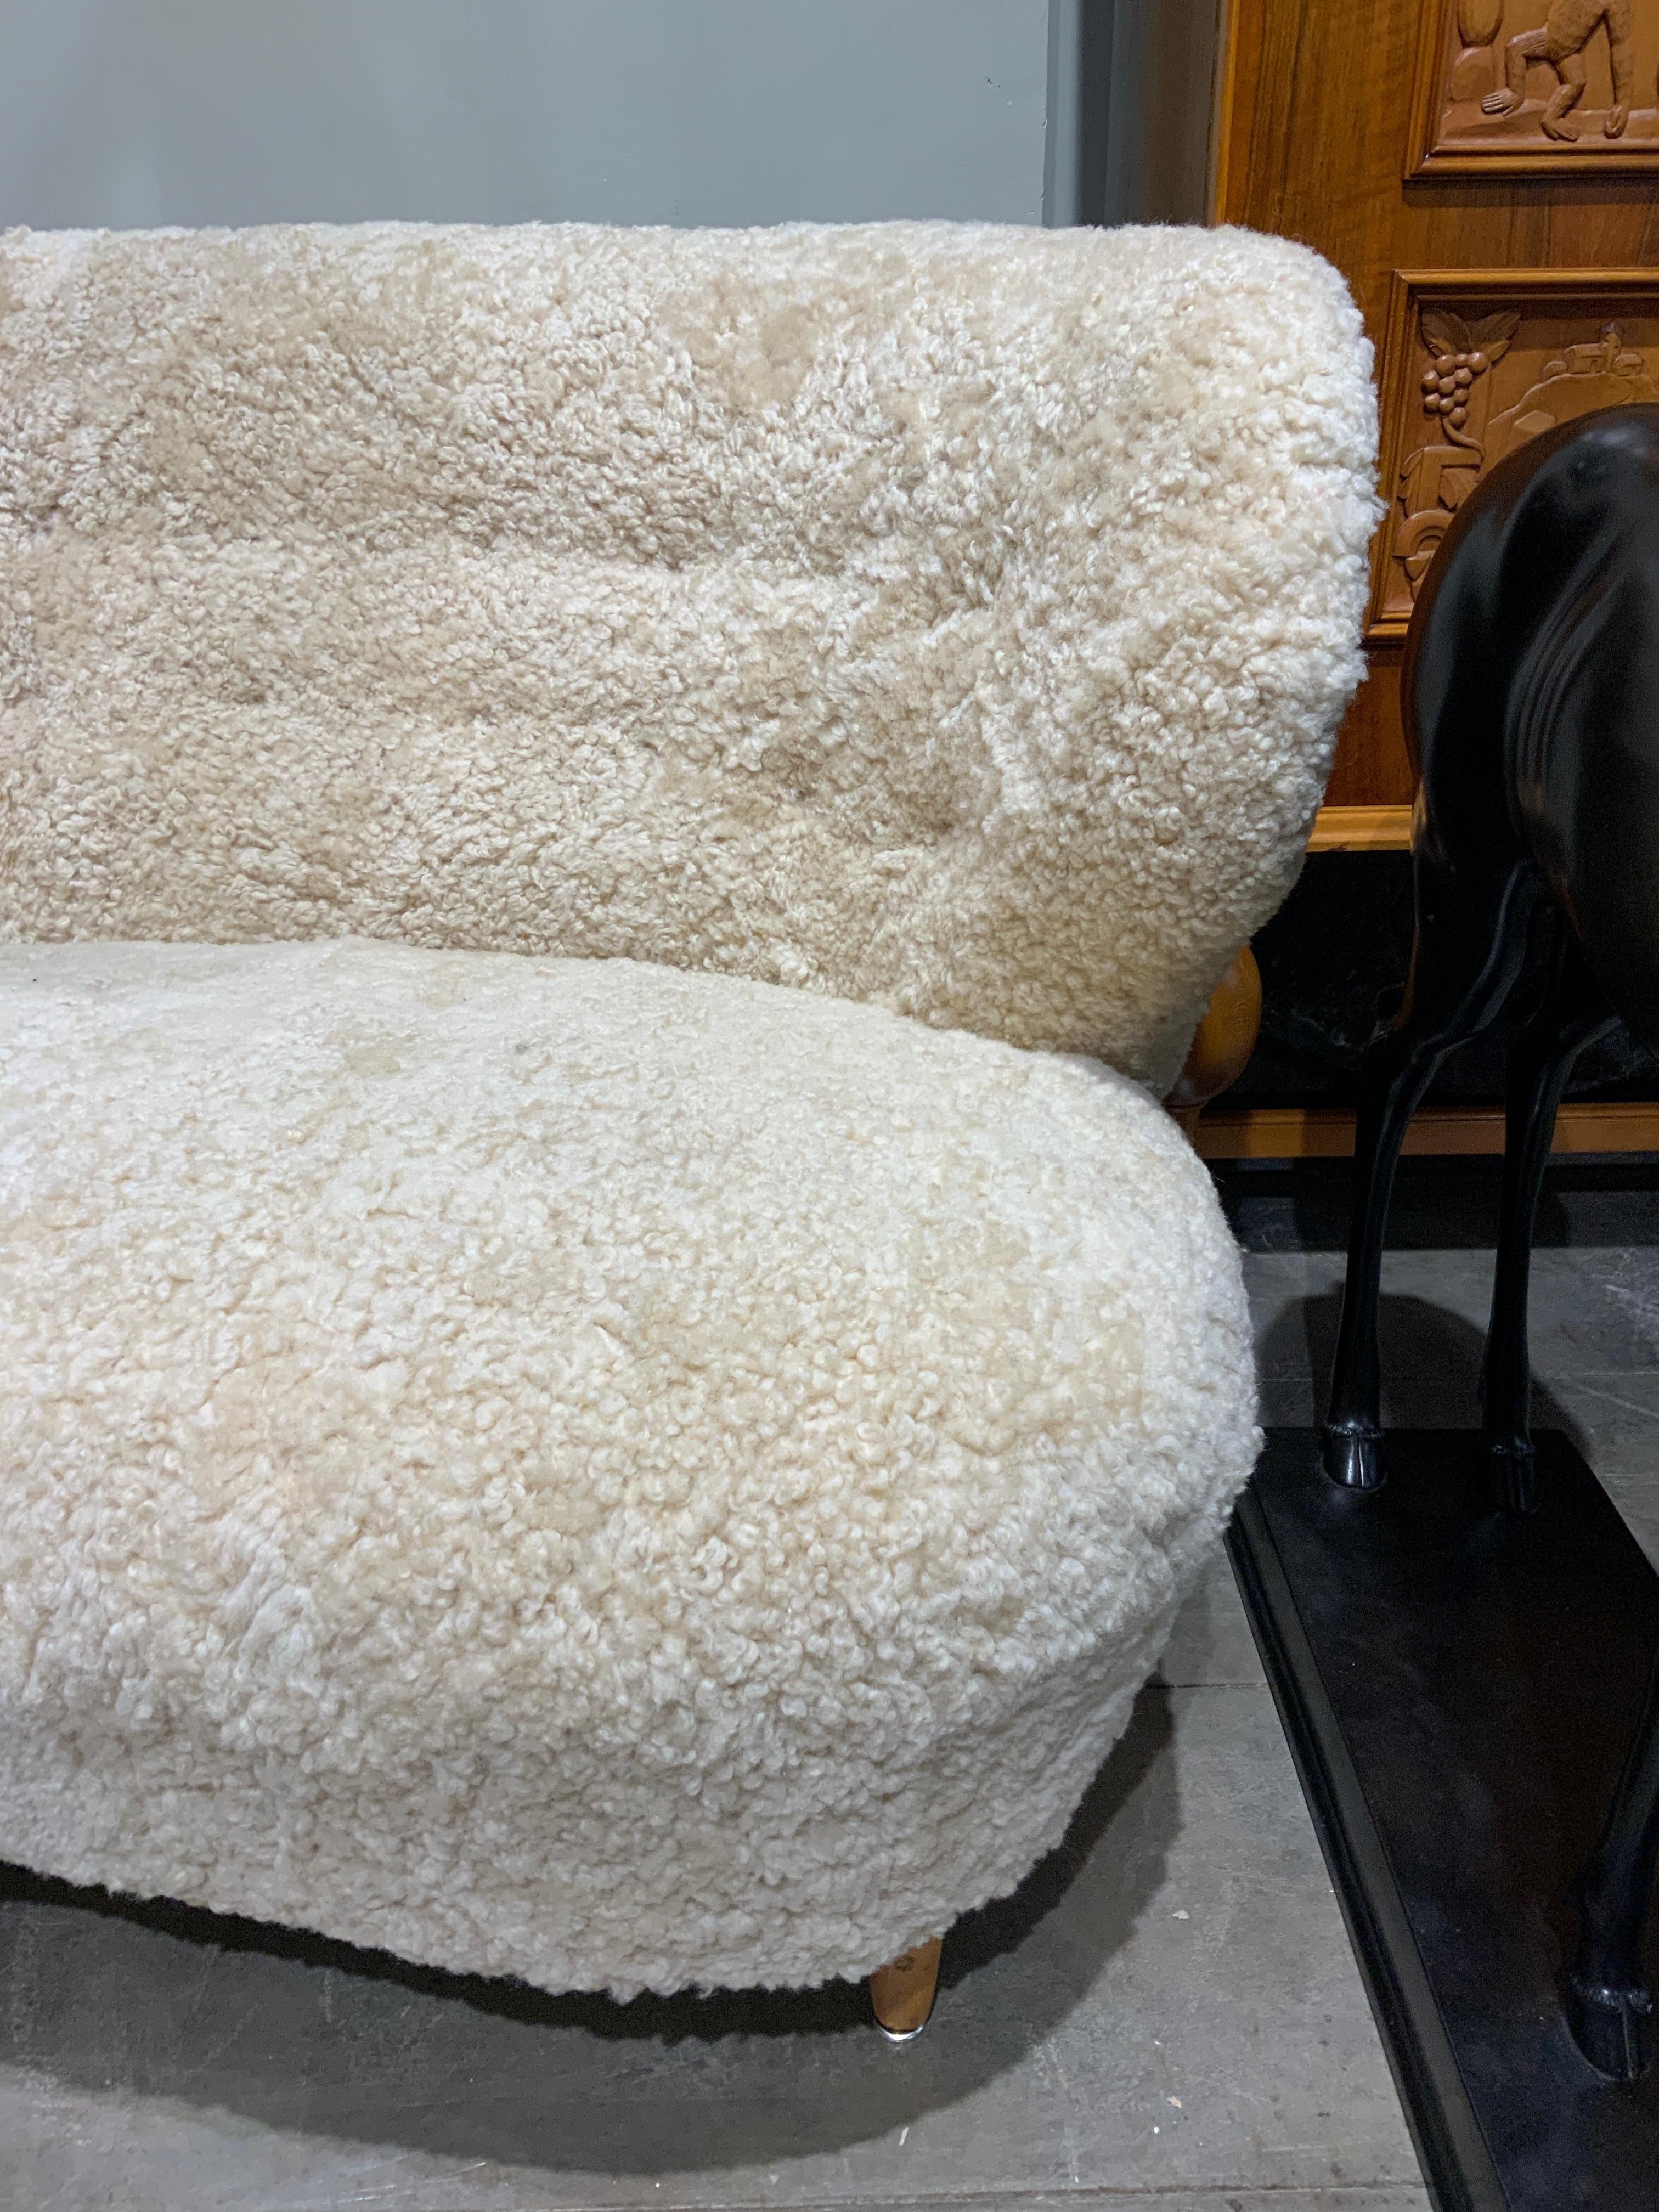 Très élégant canapé incurvé Finlande circa 1940 nouvellement recouvert de peau de mouton. 
2 sièges 